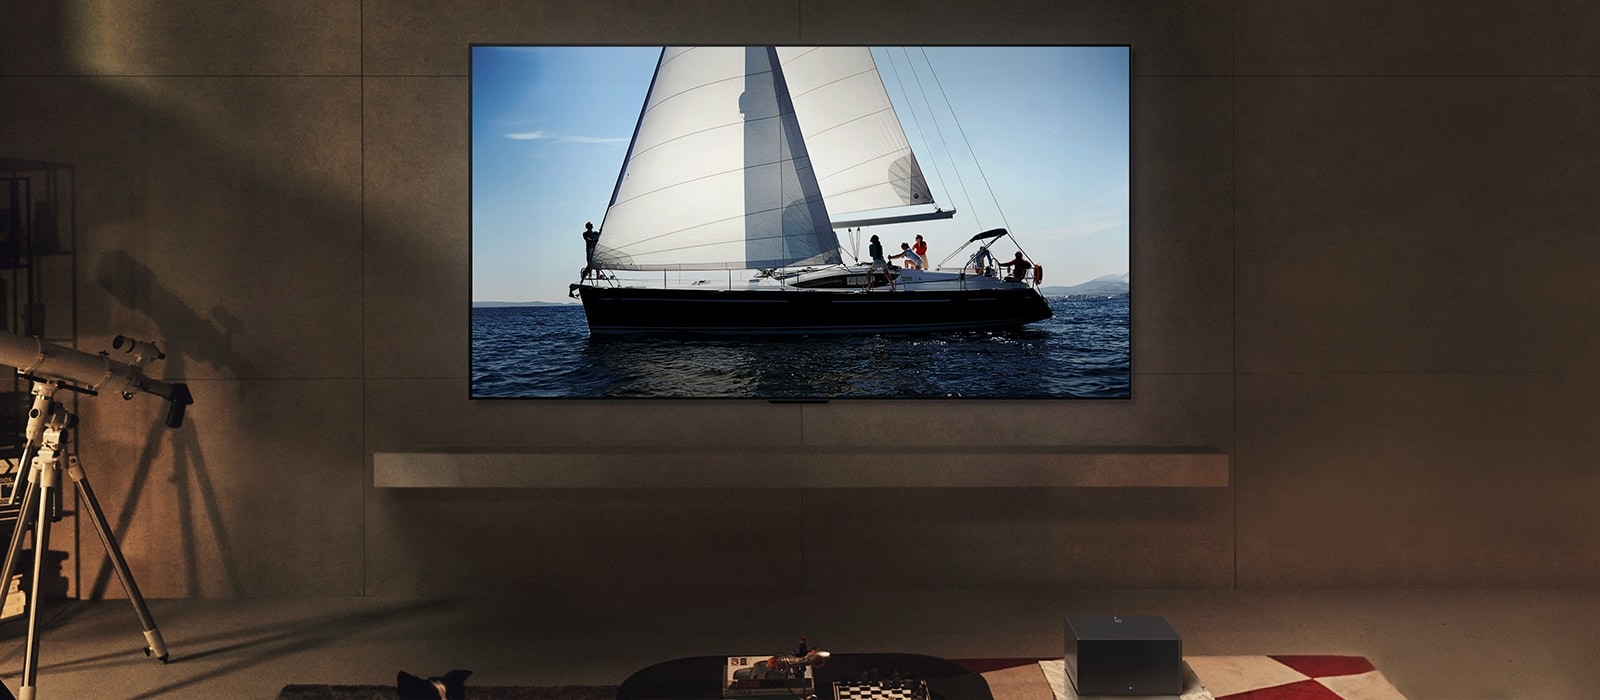 夜晚時間位於現代客廳空間的 LG OLED evo M4 和 LG Soundbar。以理想亮度顯示帆船航行於海洋中的螢幕影像。